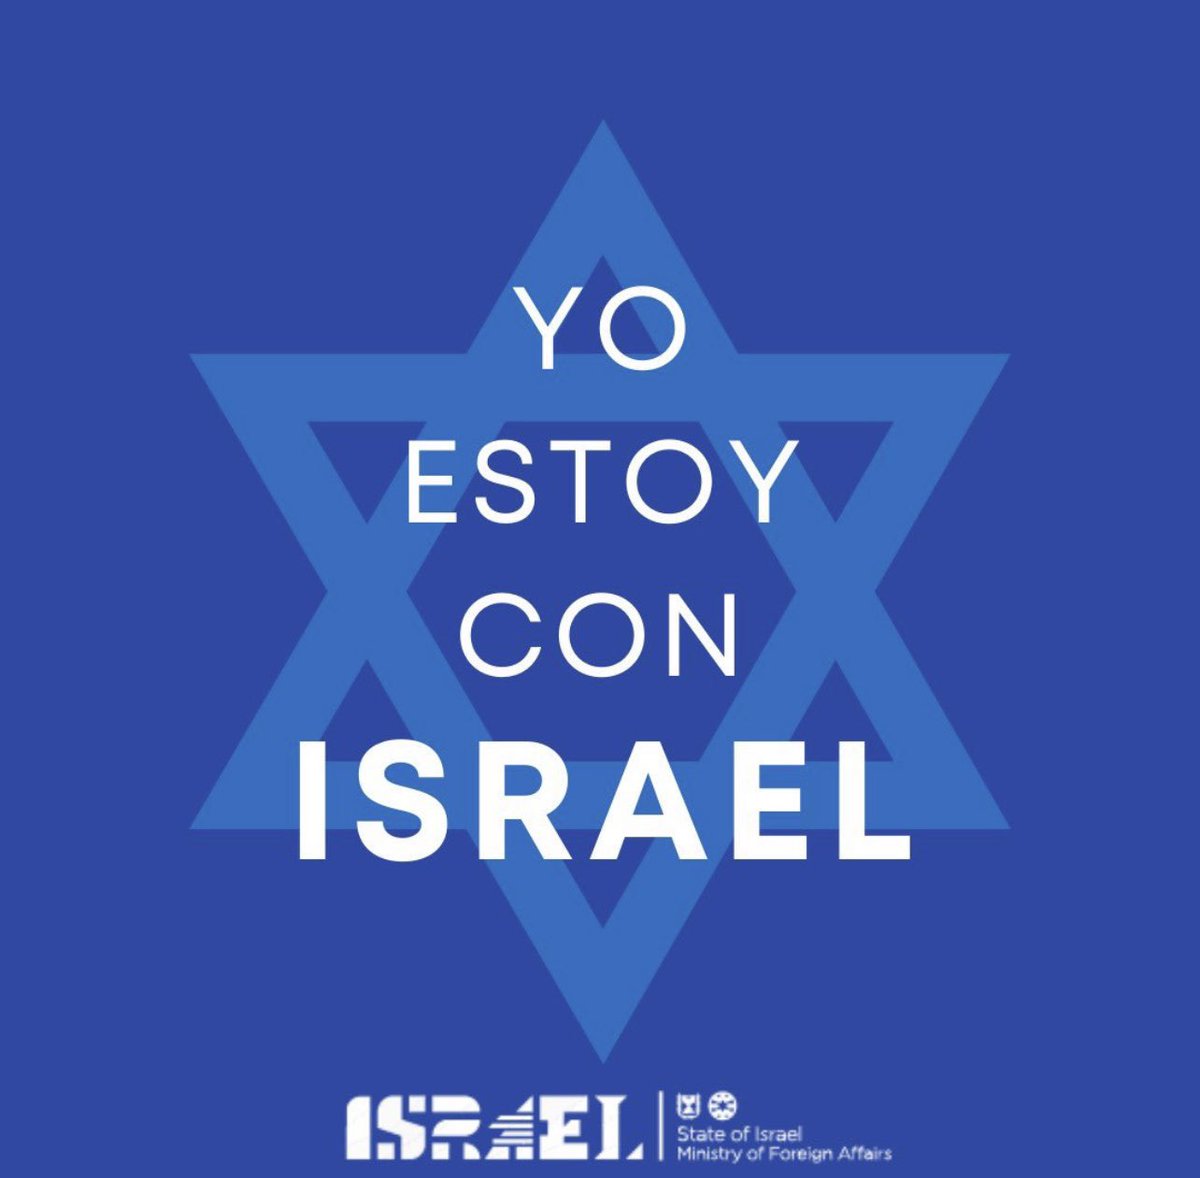 A ver, amigos, mañana en el televoto os quiero ver a TODOS votando a Israel en Eurovisión . #Israel12Points 🇮🇱 #EurovisionRTVE #YoEstoyConIsrael 🇦🇷#SóloQuedaVOX 🇪🇸